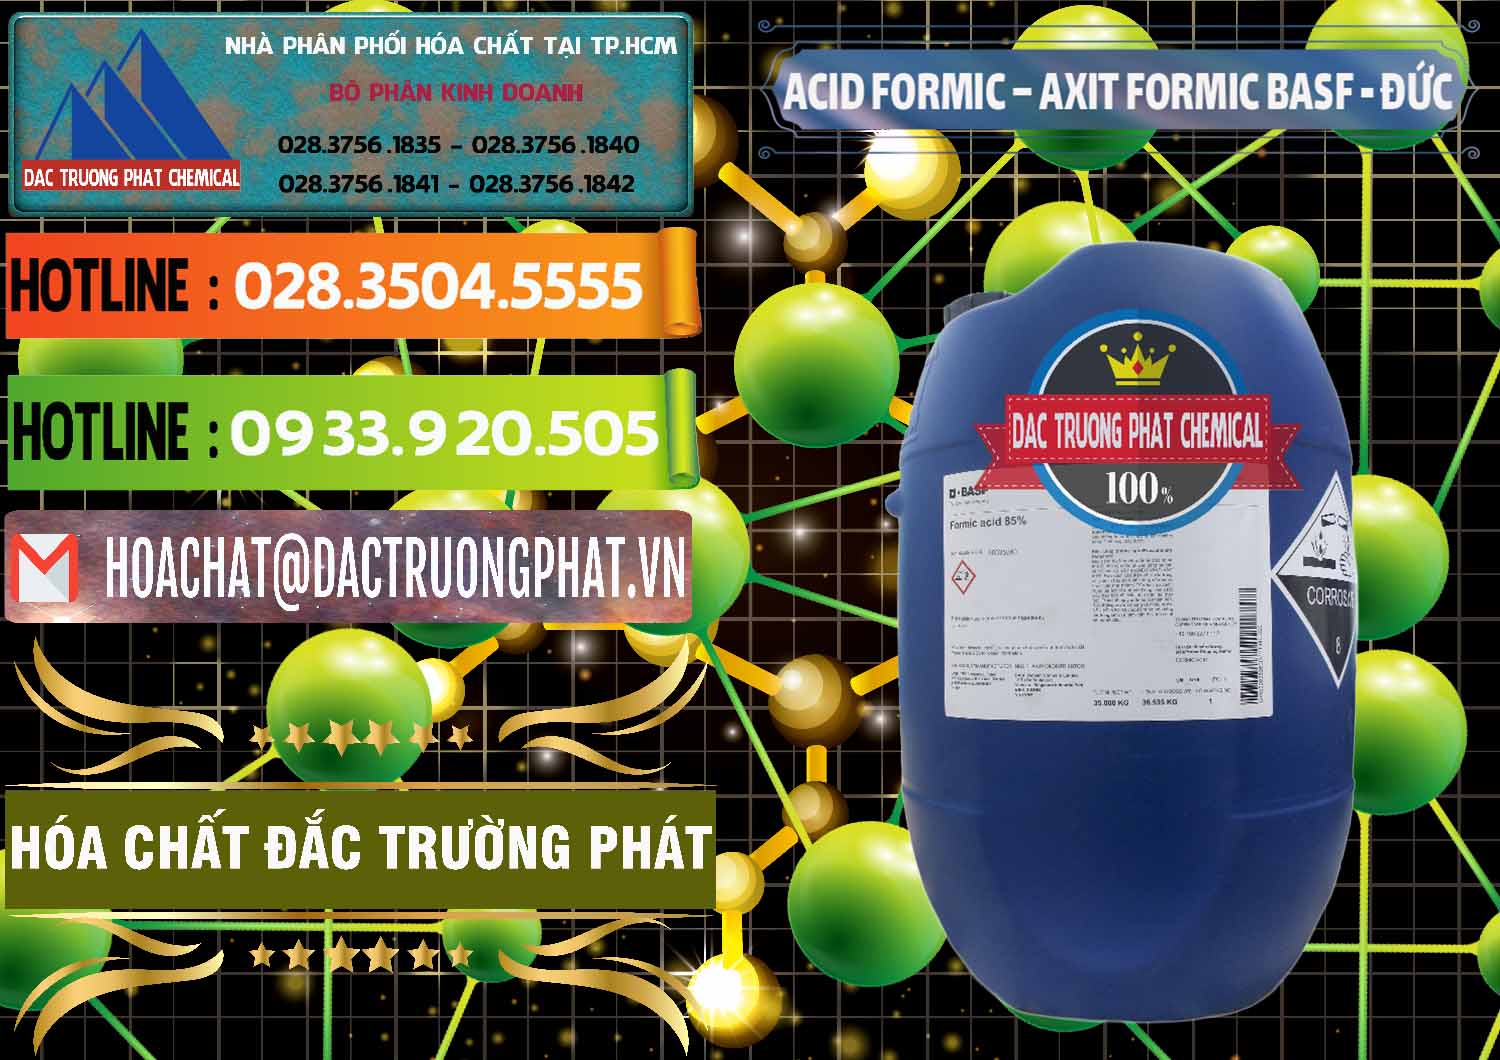 Chuyên phân phối & bán Acid Formic - Axit Formic BASF Đức Germany - 0028 - Nhà cung cấp _ nhập khẩu hóa chất tại TP.HCM - cungcaphoachat.com.vn